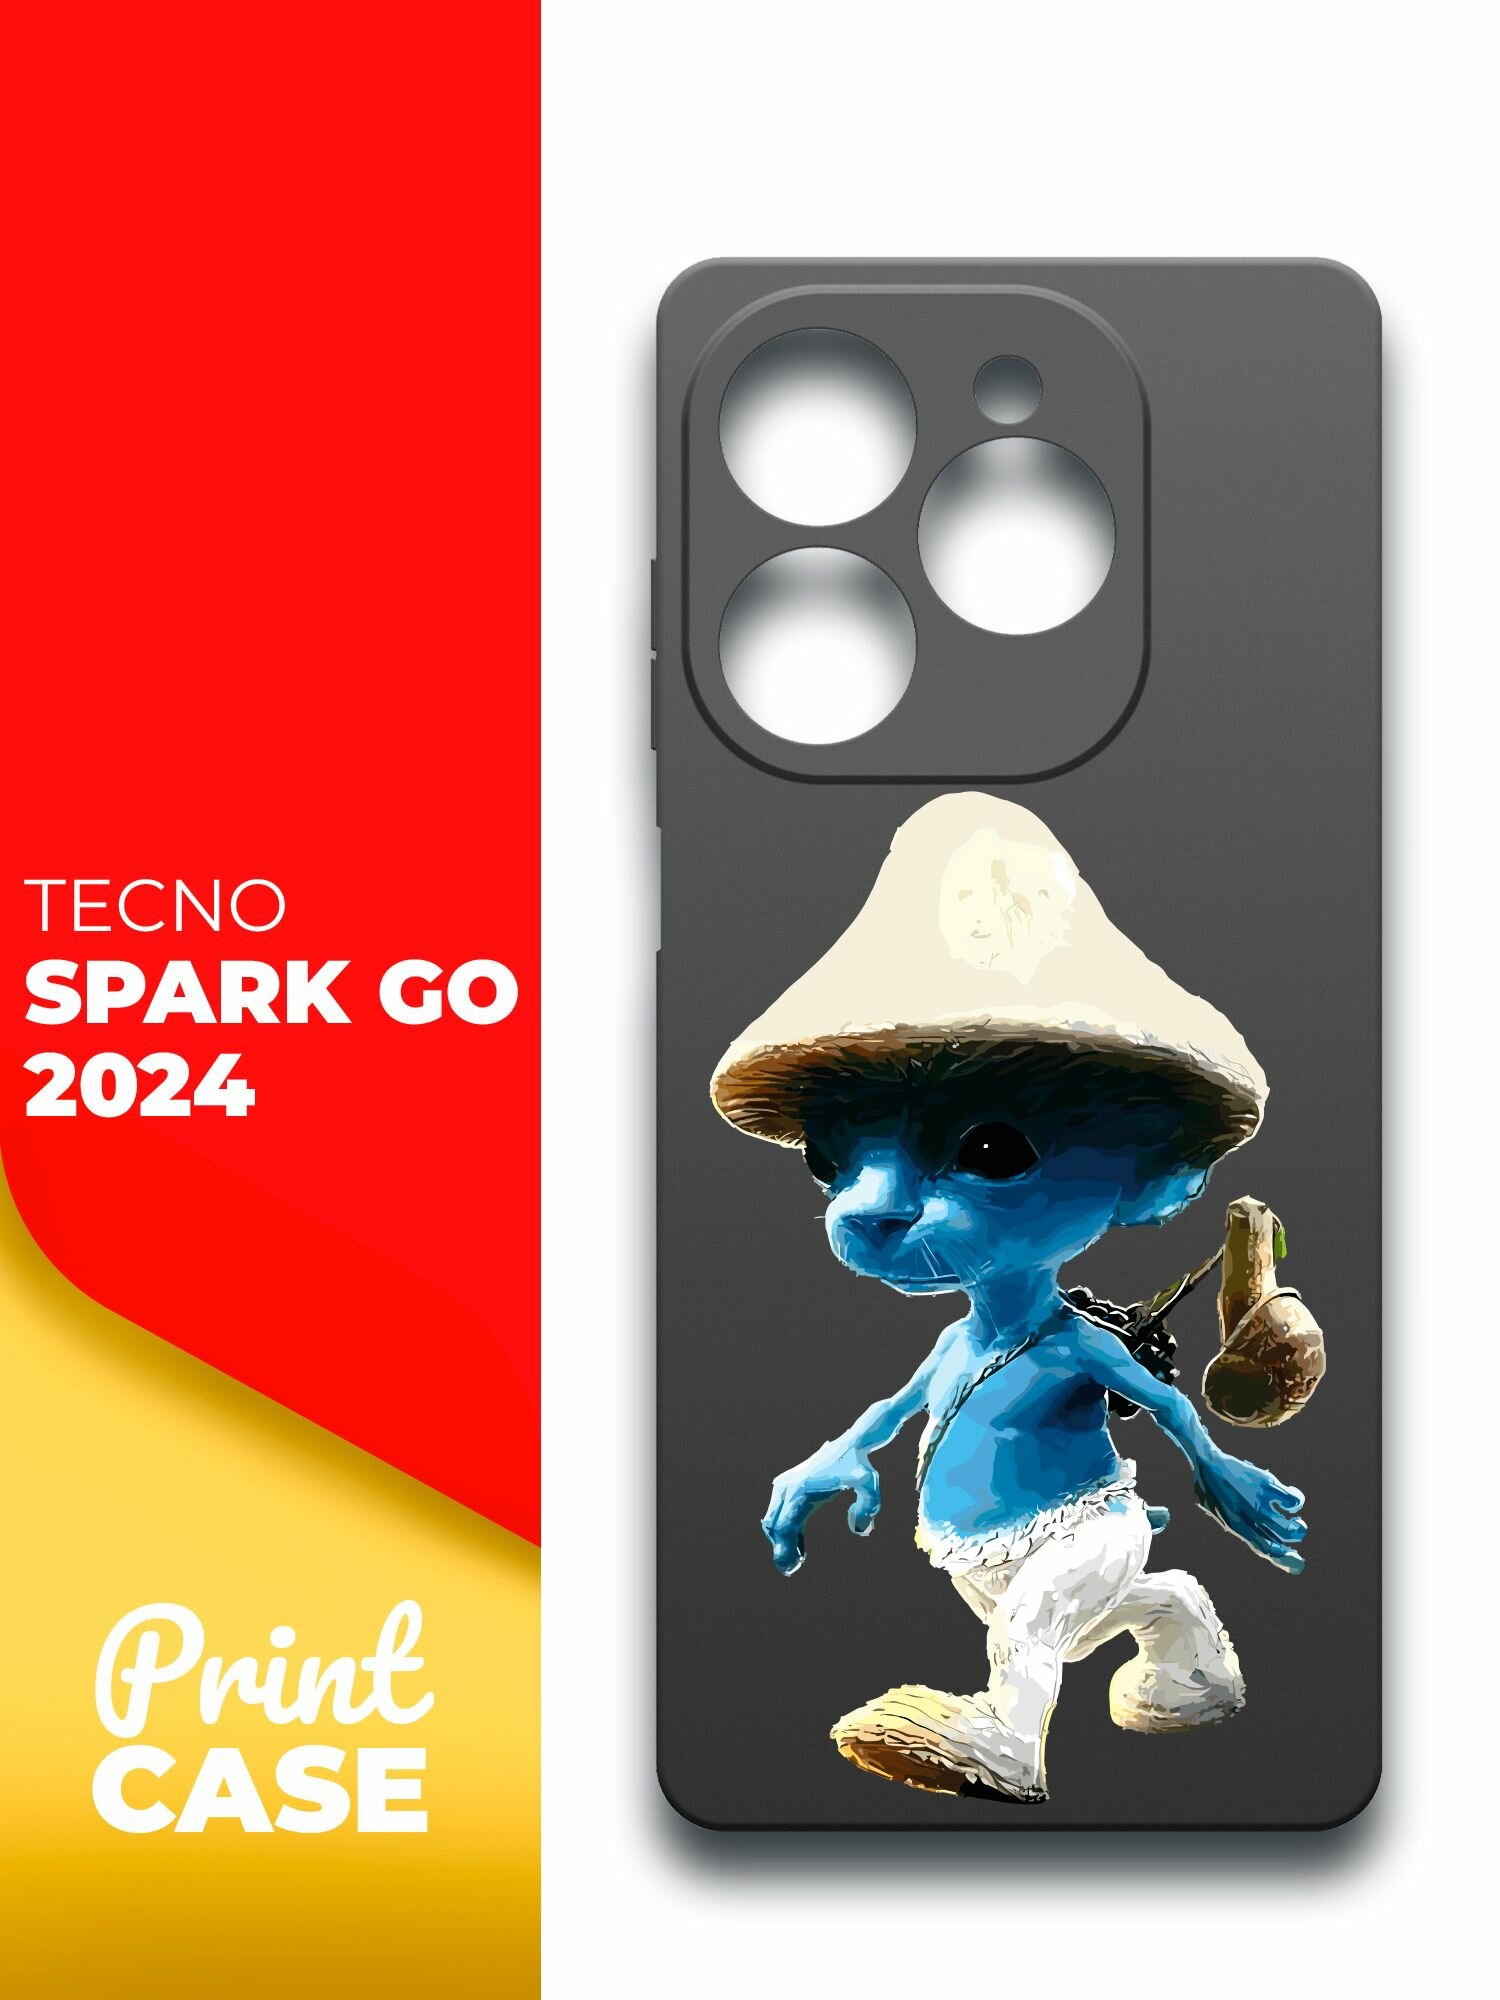 Чехол на Tecno Spark Go 2024 (Техно Спарк Гоу 2024) черный матовый силиконовый с защитой (бортиком) вокруг камер, Miuko (принт) Шалушай